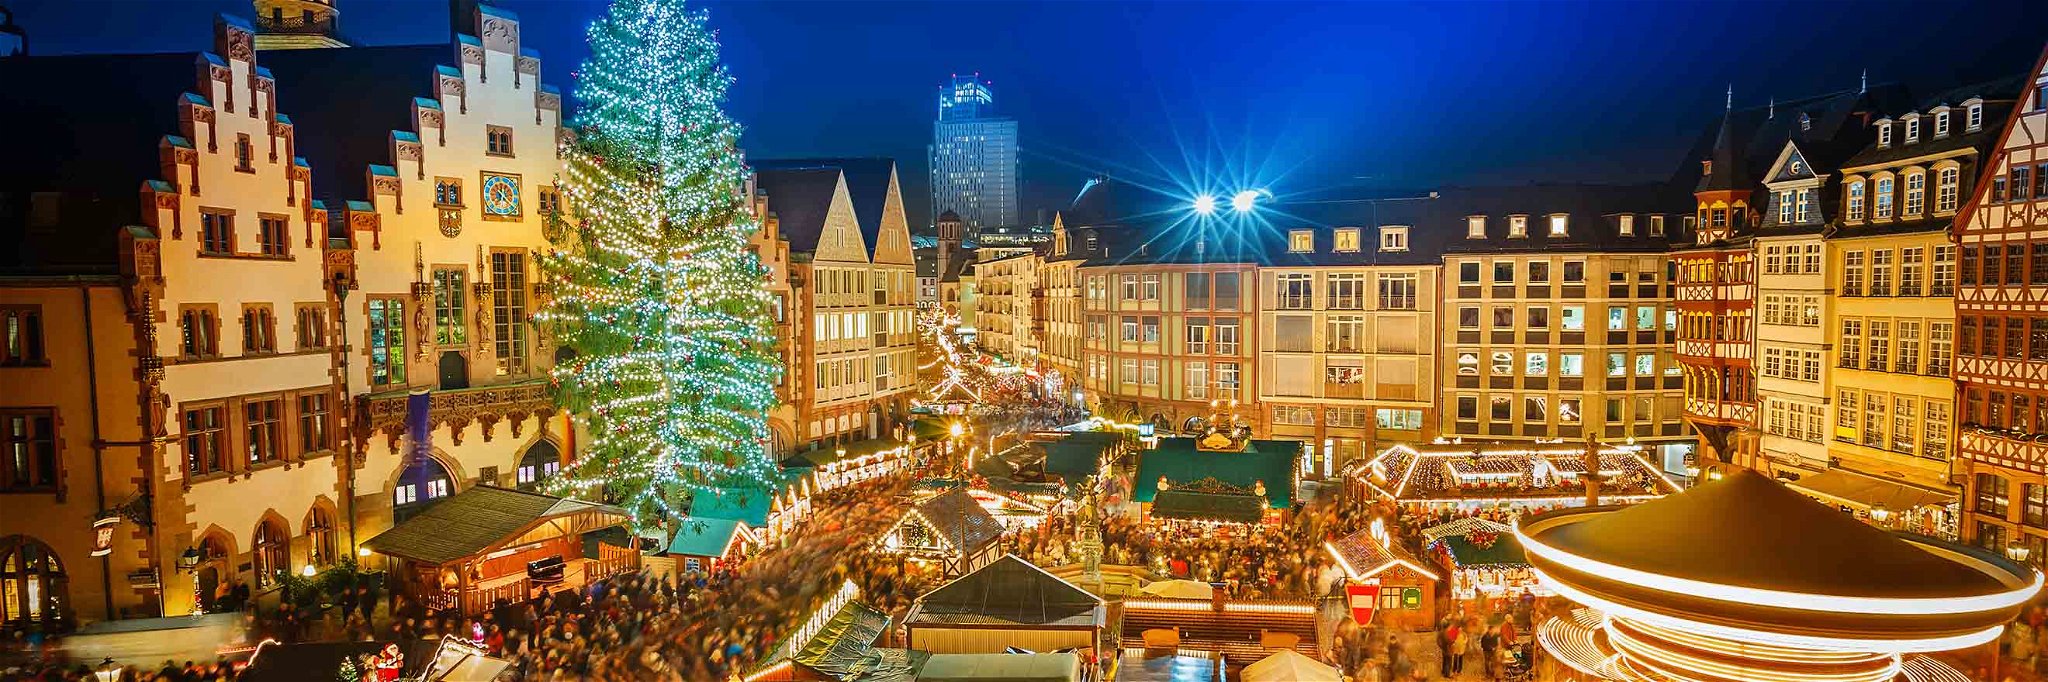 In Süddeutschland gibt es eine bunte Vielfalt an klassischen und außergewöhnlichen Weihnachtsmärkten.